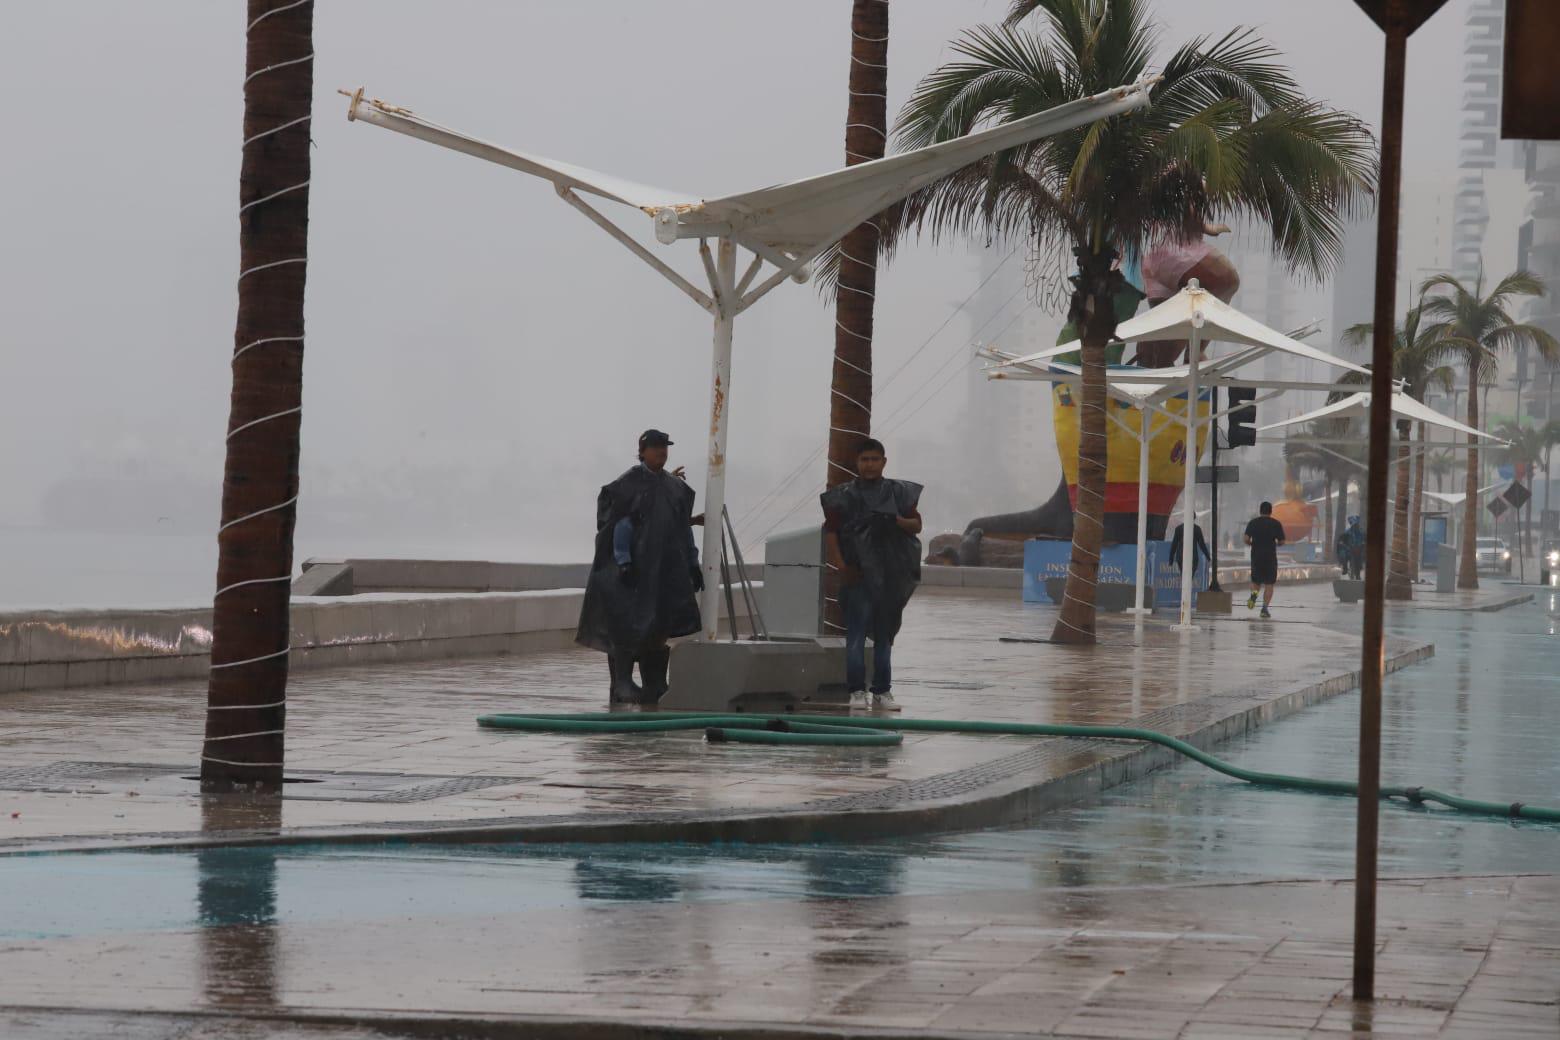 $!Enjabonan y lavan el Malecón de Mazatlán para eliminar manchas y olores tras Carnaval